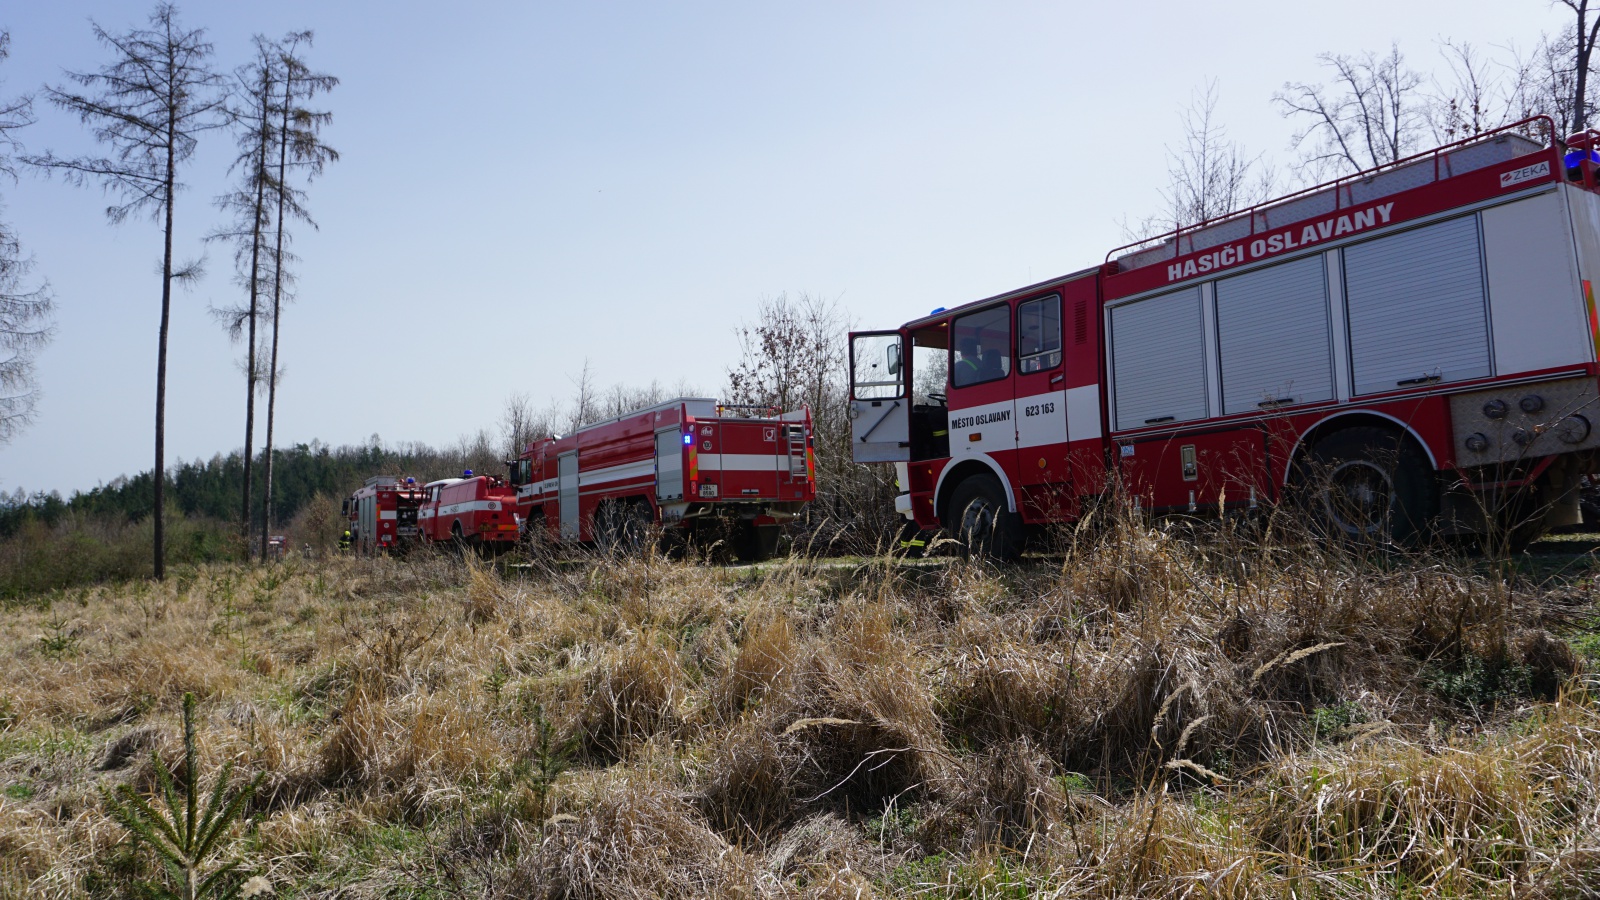 Požáry v Oslavanech zakládal dobrovolný hasič. Kolegům navíc ukradl věci -  Brněnský deník